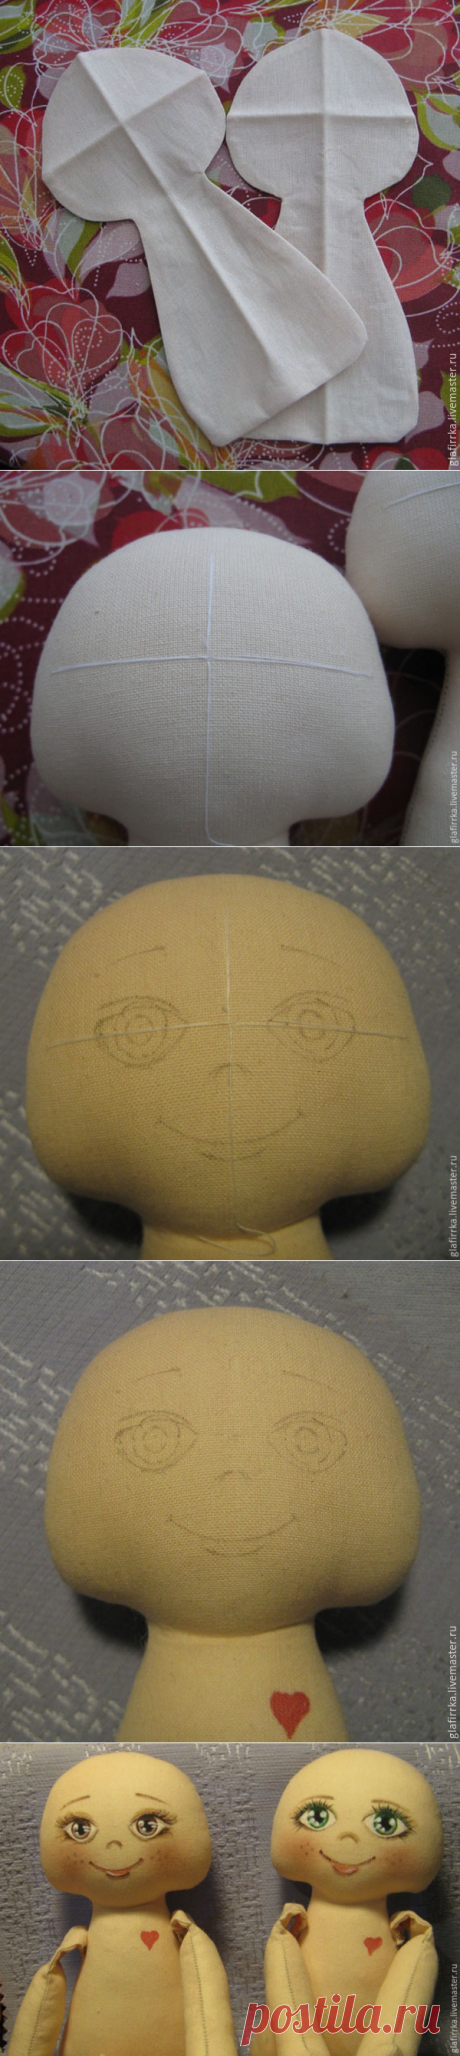 Как разметить лицо текстильной куколки - Ярмарка Мастеров - ручная работа, handmade